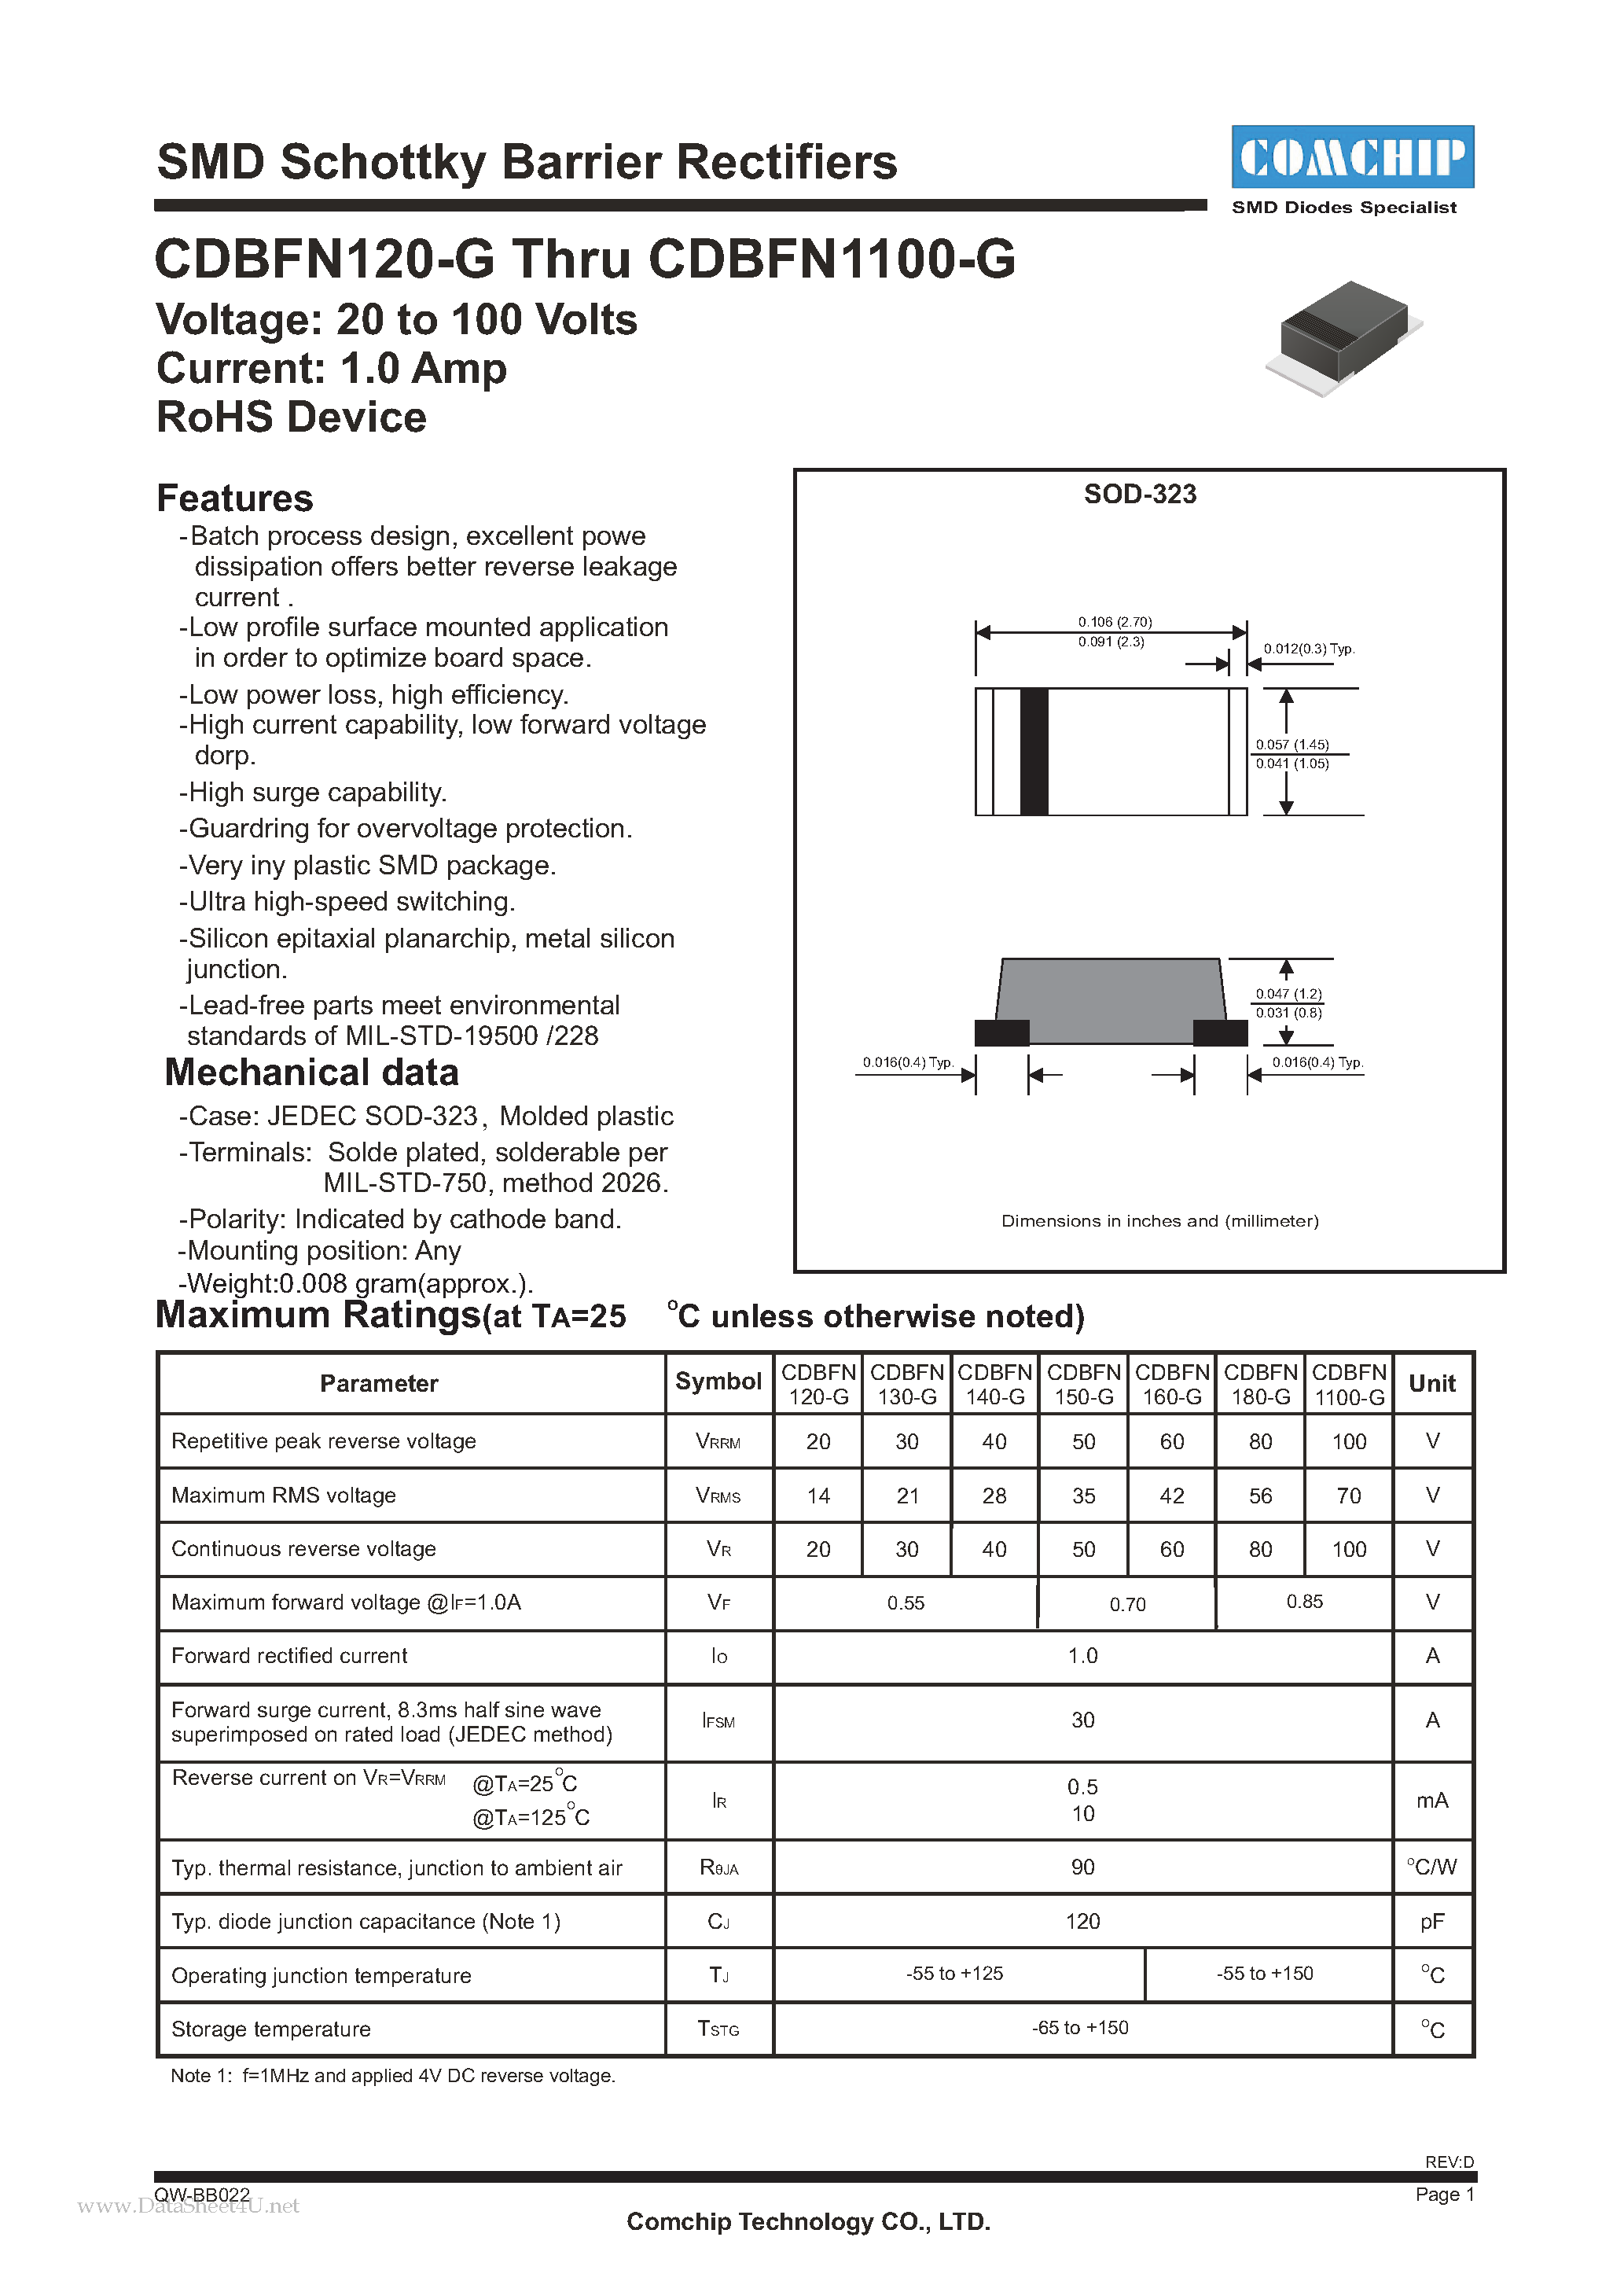 Даташит CDBFN1100-G - (CDBFN120-G - CDBFN1100-G) SMD Schottky Barrier Rectifiers страница 1